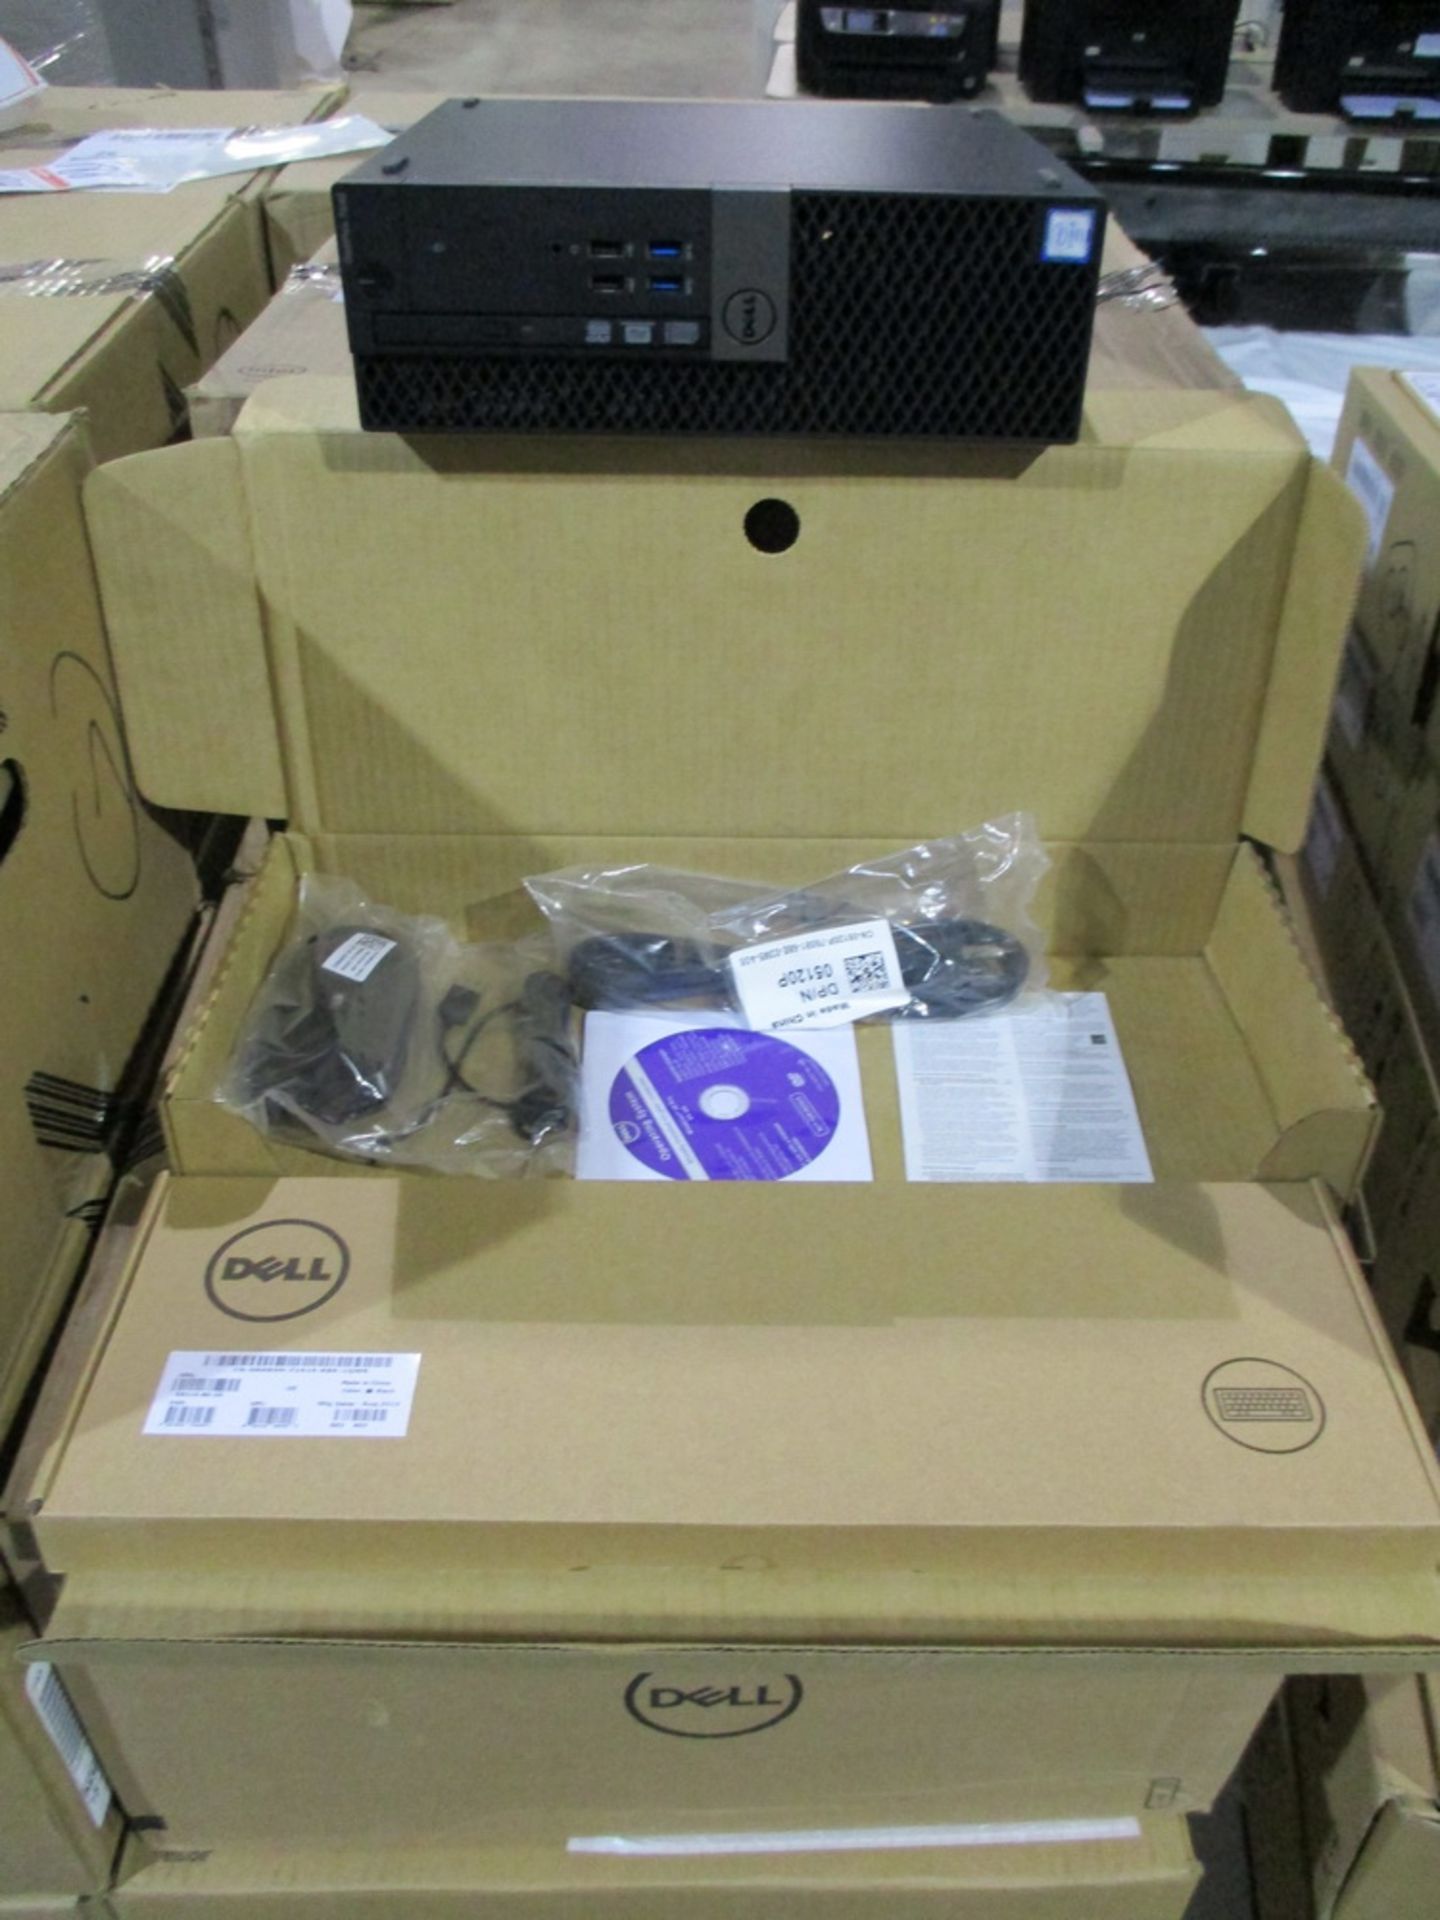 NEW IN BOX - DELL OPTIPLEX 7040 SMALL FORM FACTOR PC W/ INTEL QUAD CORE I5 6500 3.20GHZ (6TH